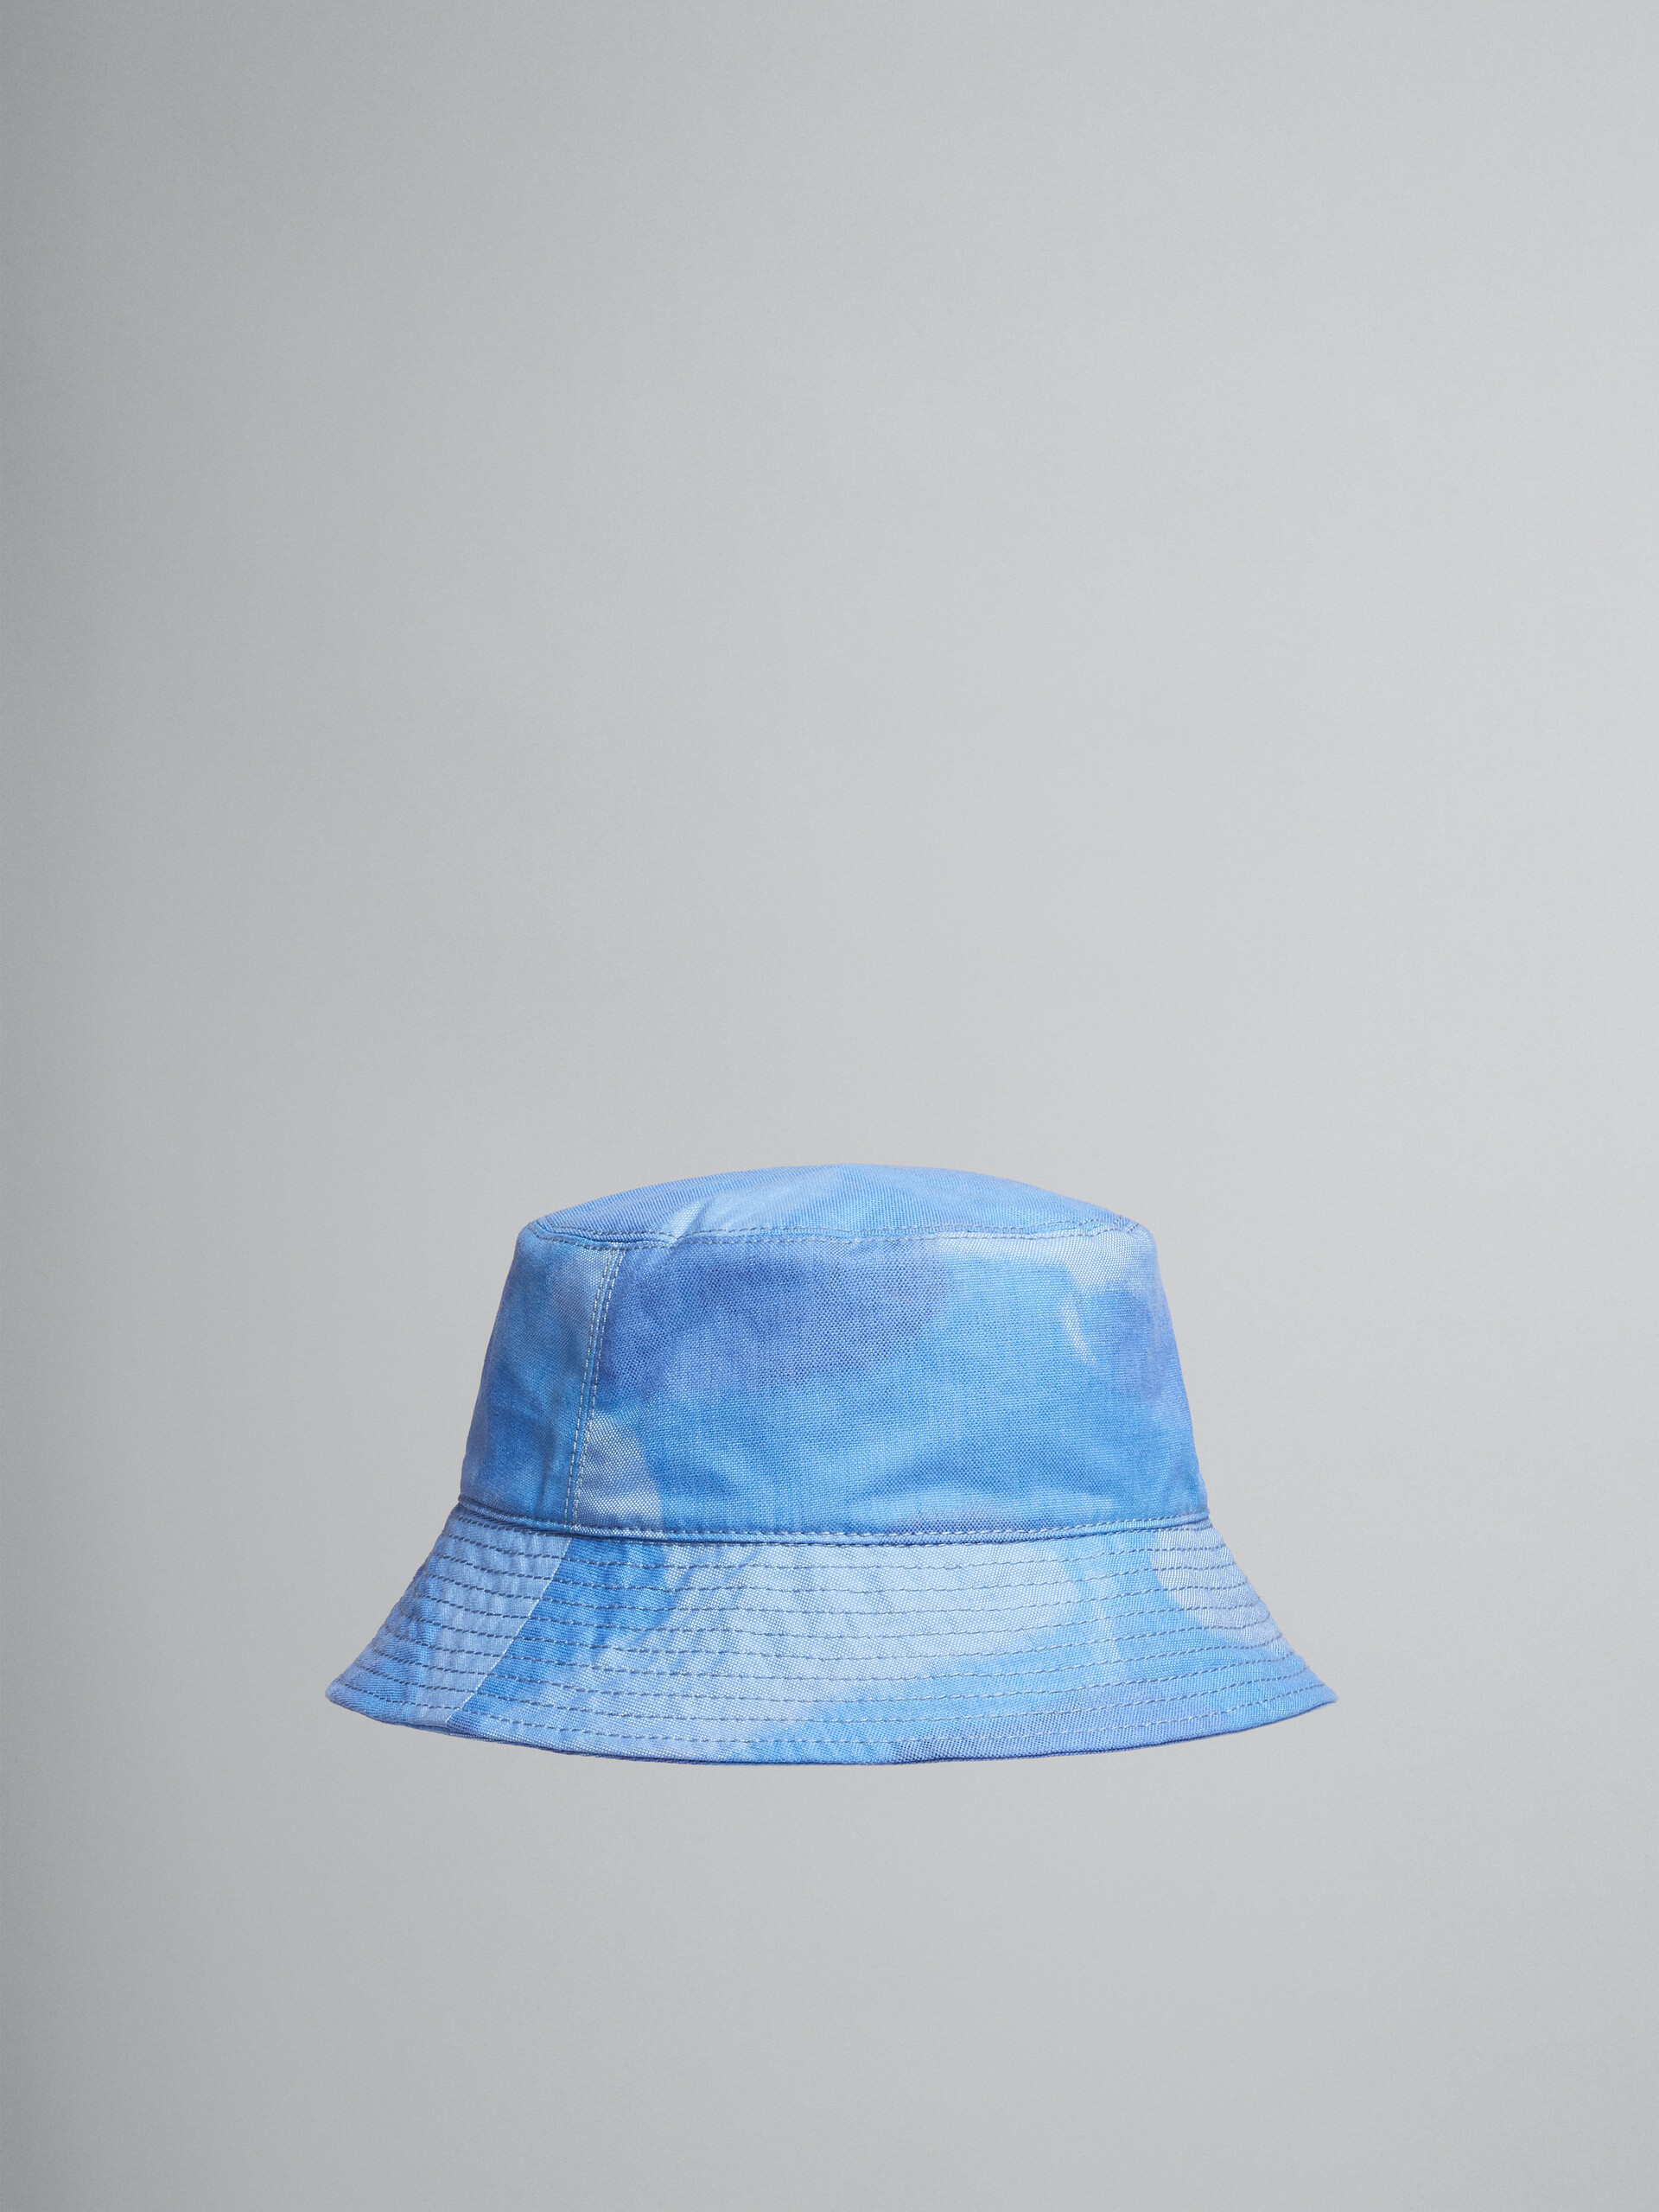 라이트 블루 클라우드 모티프 디테일 캔버스 버킷 모자 - Hats - Image 1